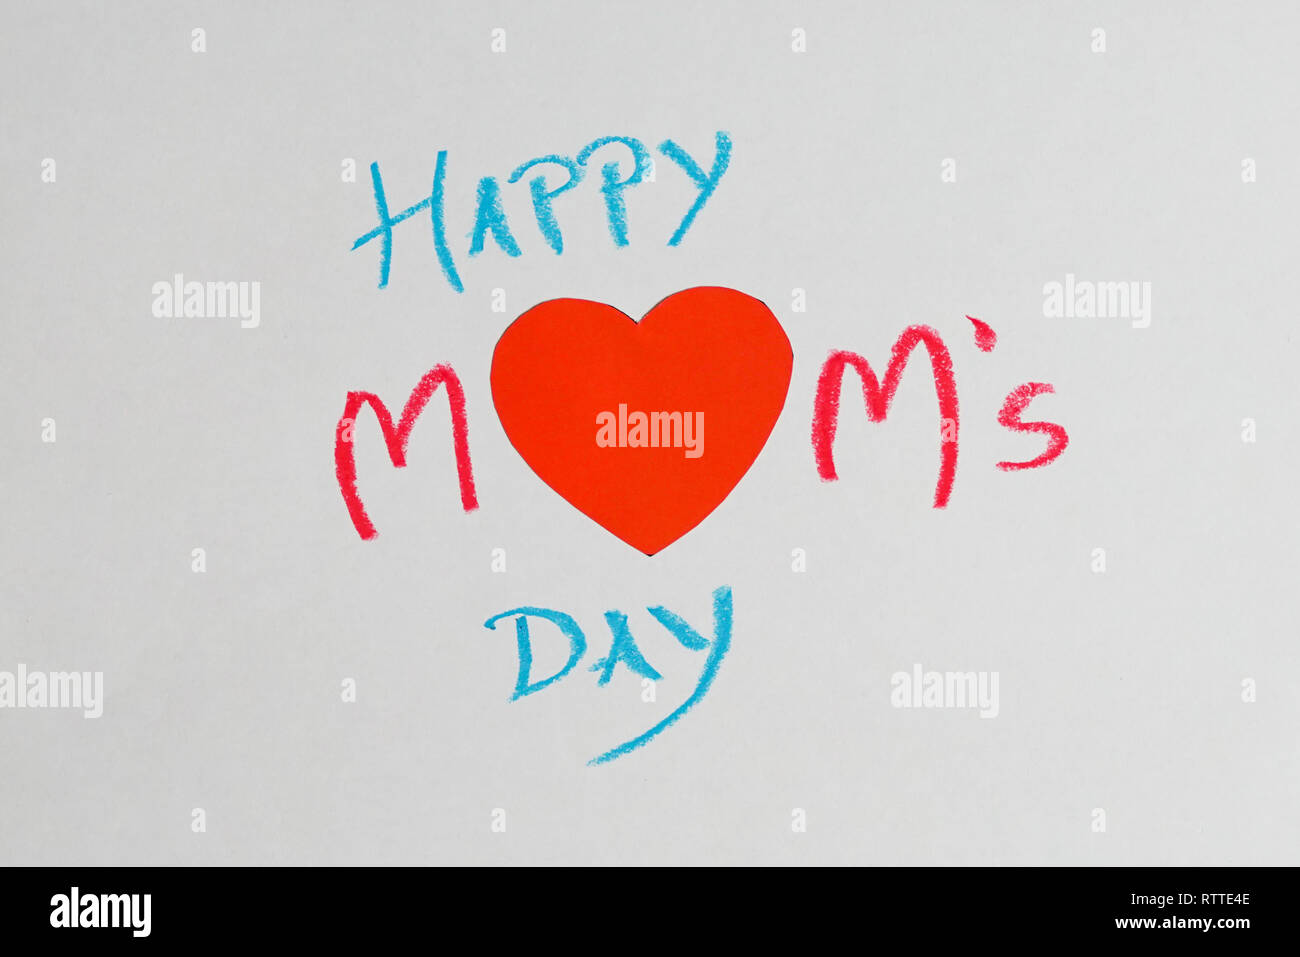 Felice della festa della mamma - parole scritte su sfondo bianco con olio pastelli Foto Stock